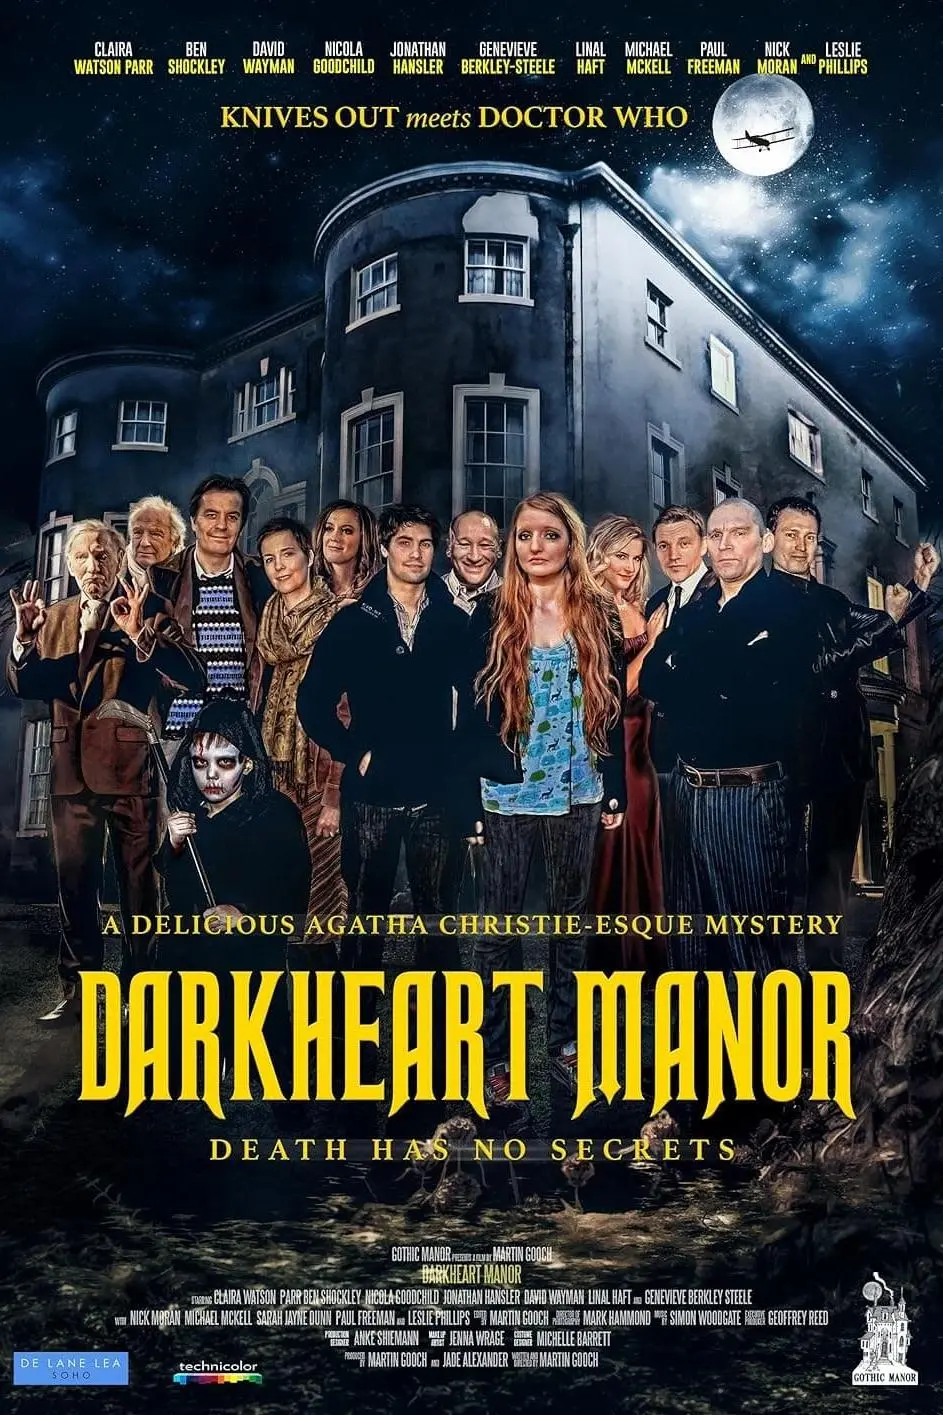 Darkheart Manor_peliplat